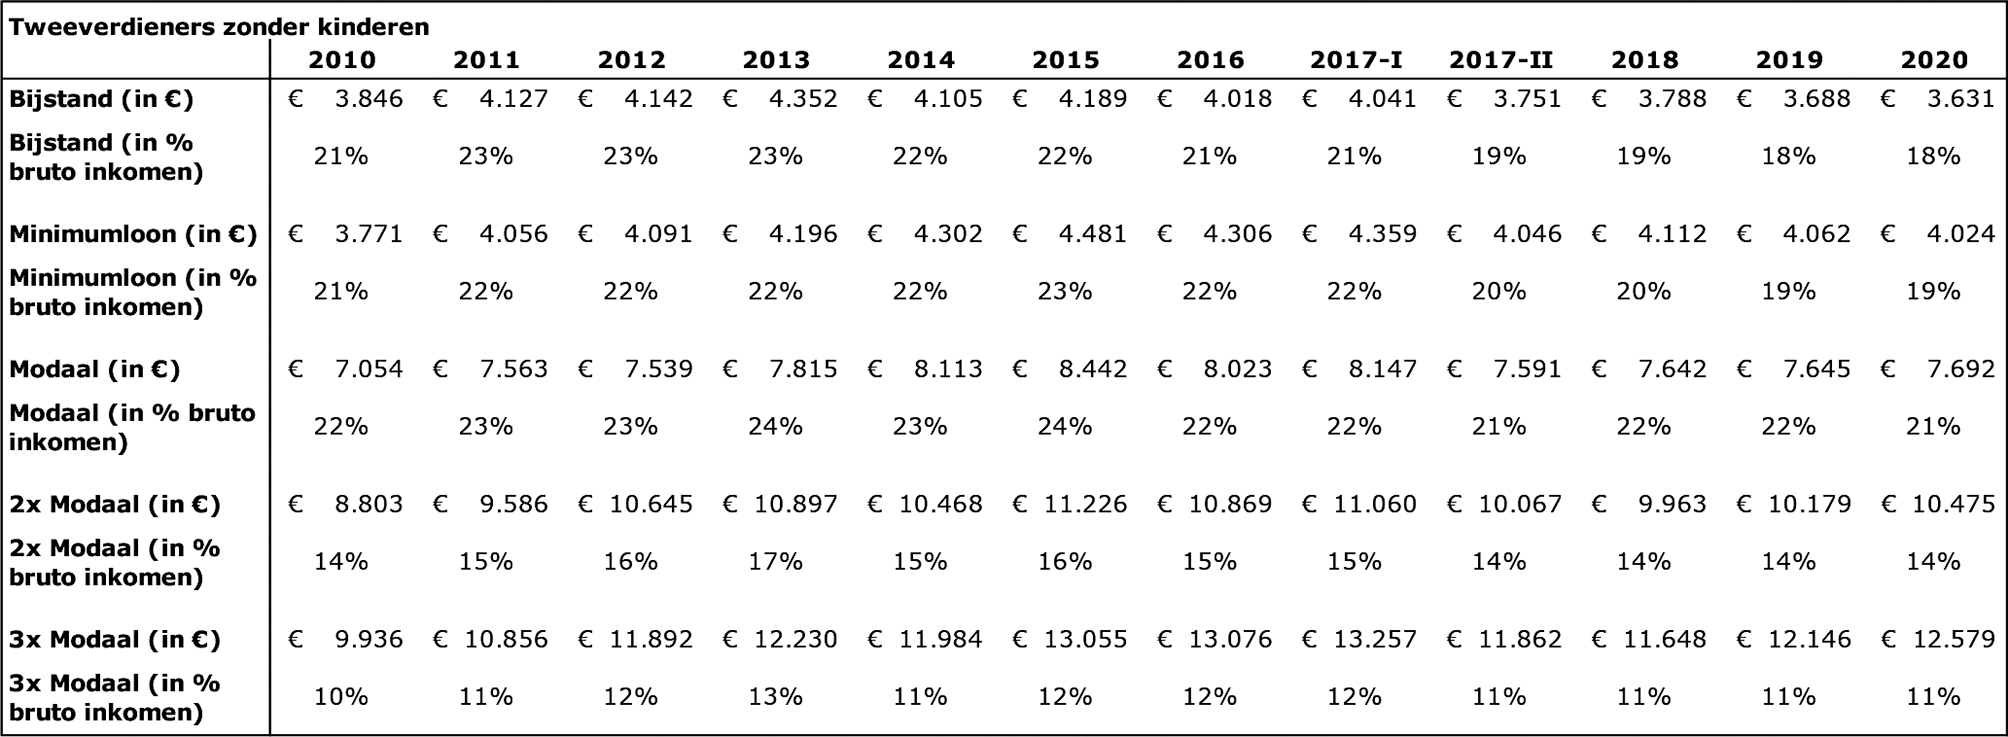 Ontwikkeling totale zorgkosten voor tweeverdieners in euro’s per jaar en als percentage van het brutoinkomen voor 2010–2020: